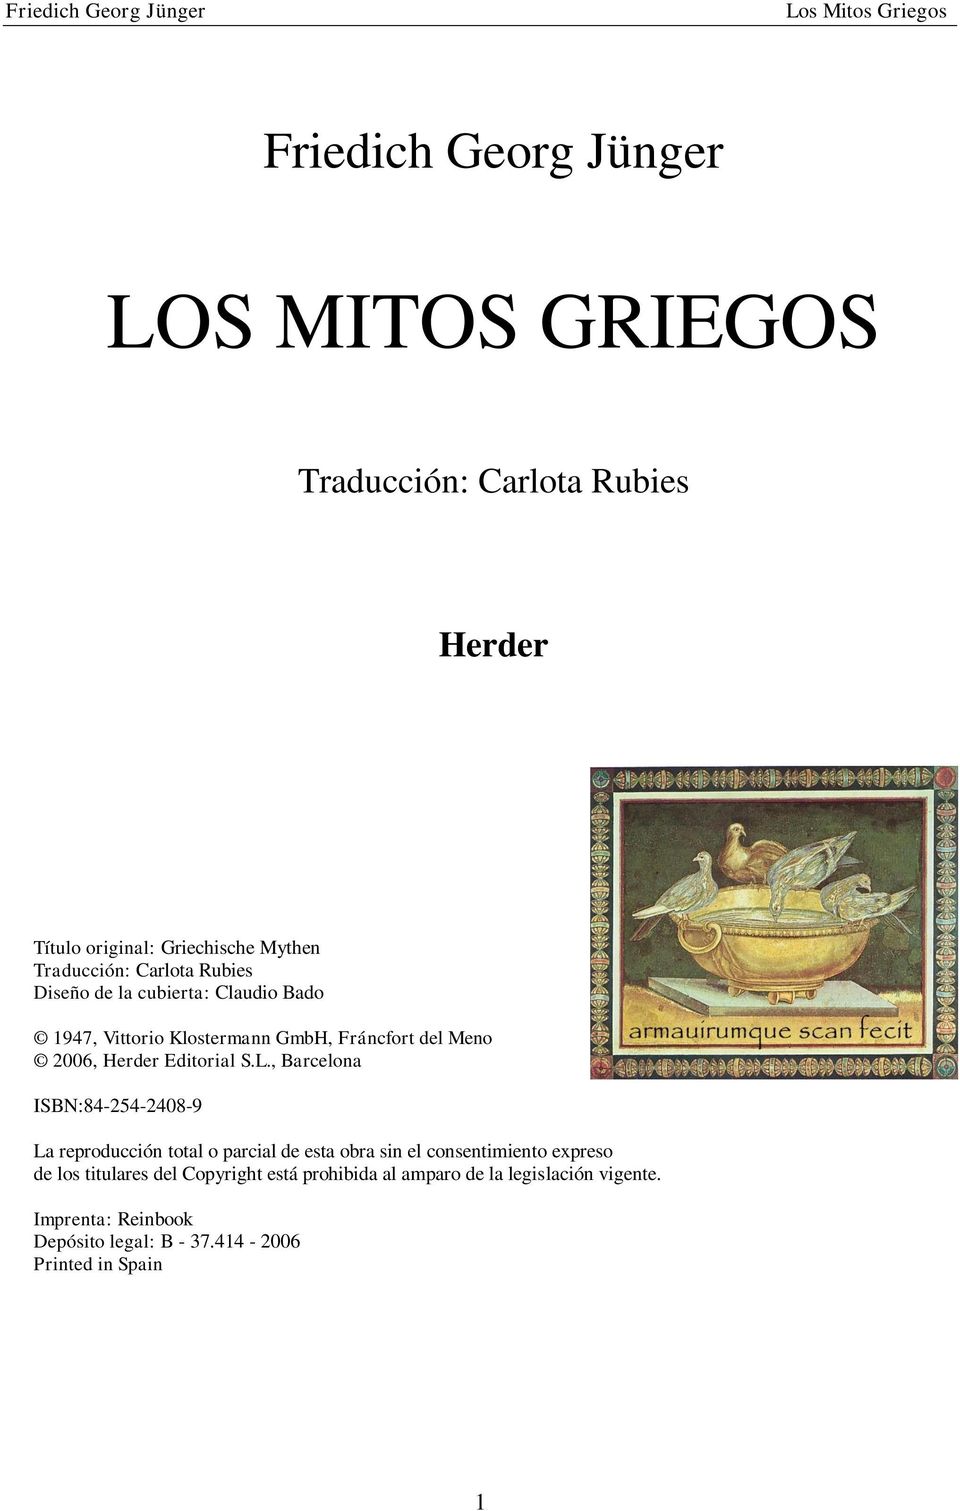 L., Barcelona ISBN:84-254-2408-9 La reproducción total o parcial de esta obra sin el consentimiento expreso de los titulares